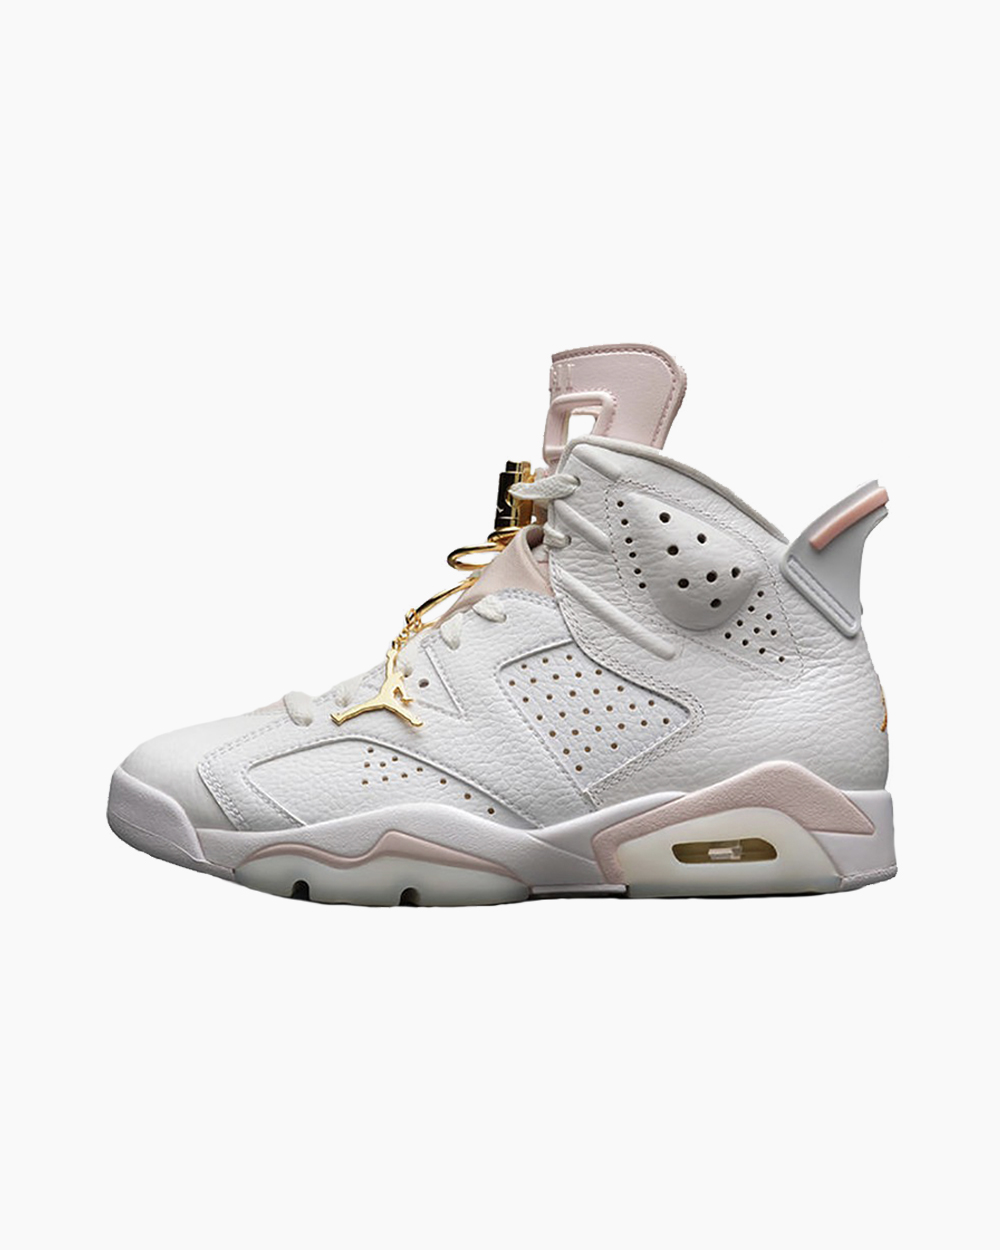 Sneaker - Air Jordan 6 “Gold Hoops” - Diabolical Rabbit